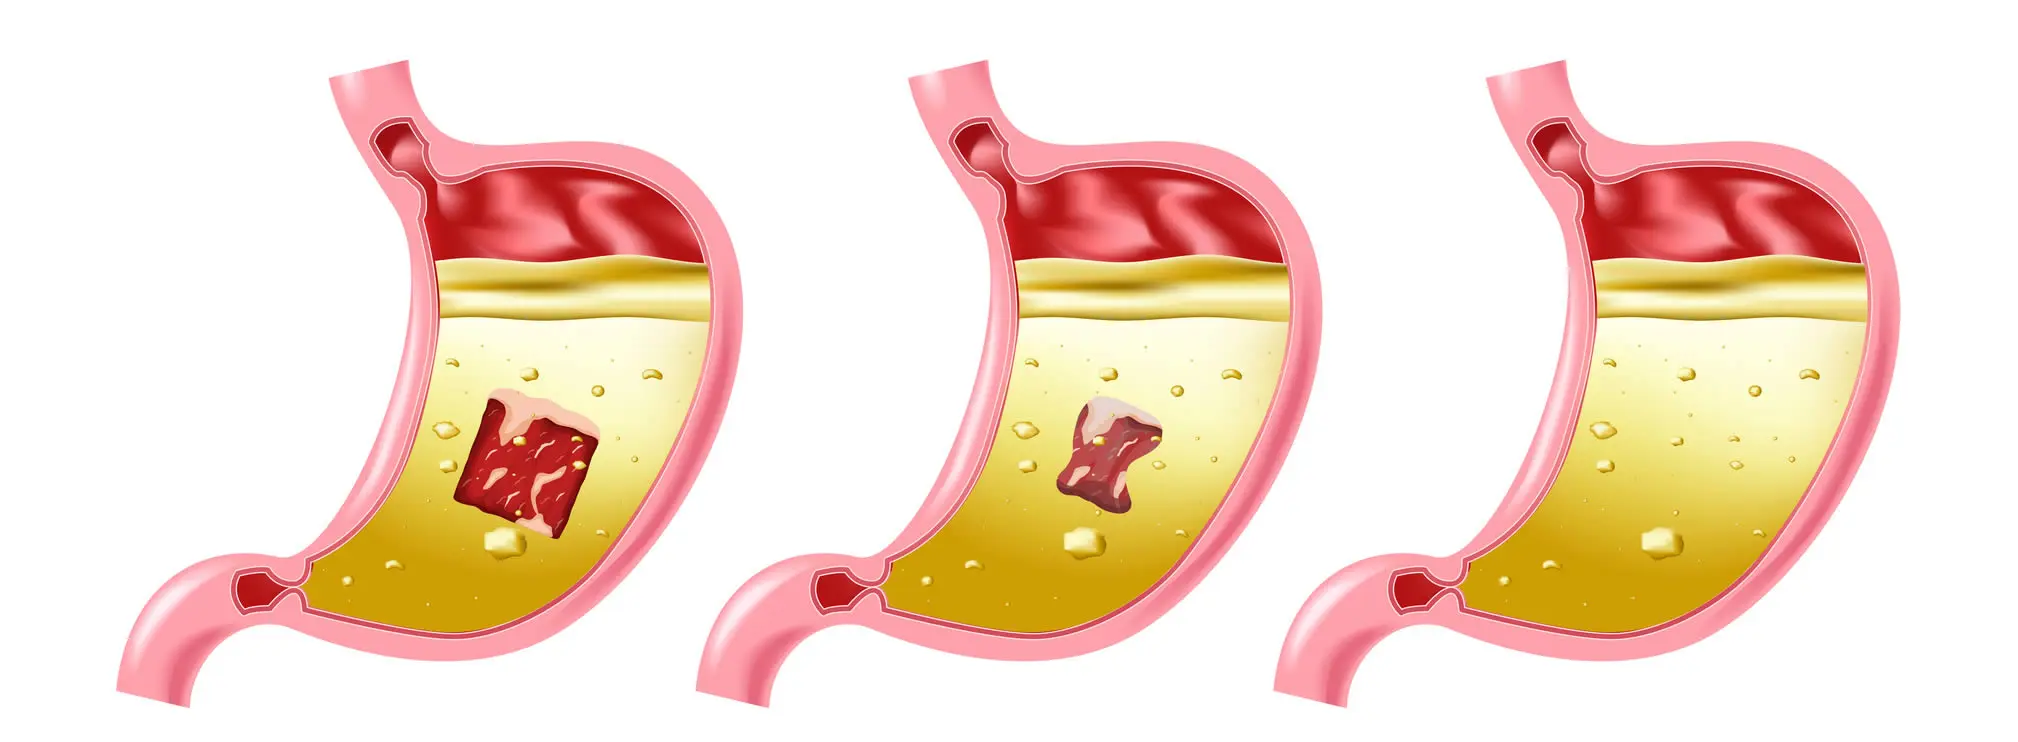 funcion jugos digestivos - Qué función cumple el sistema digestivo